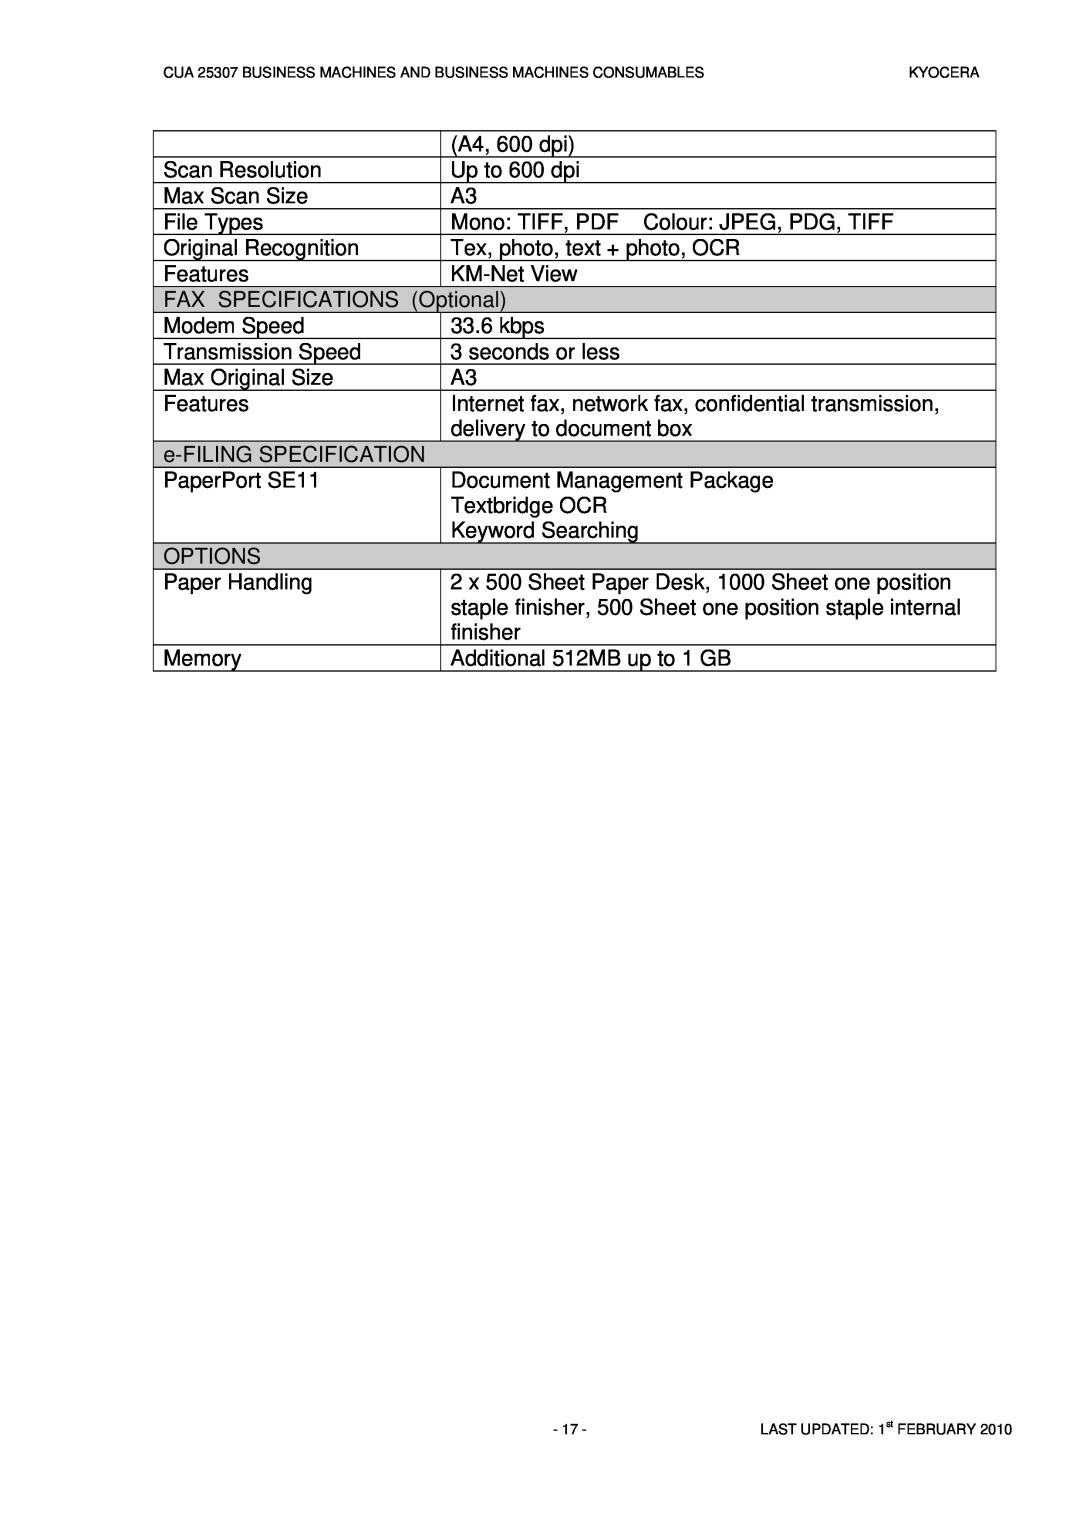 Kyocera CUA 25307 manual A4, 600 dpi 